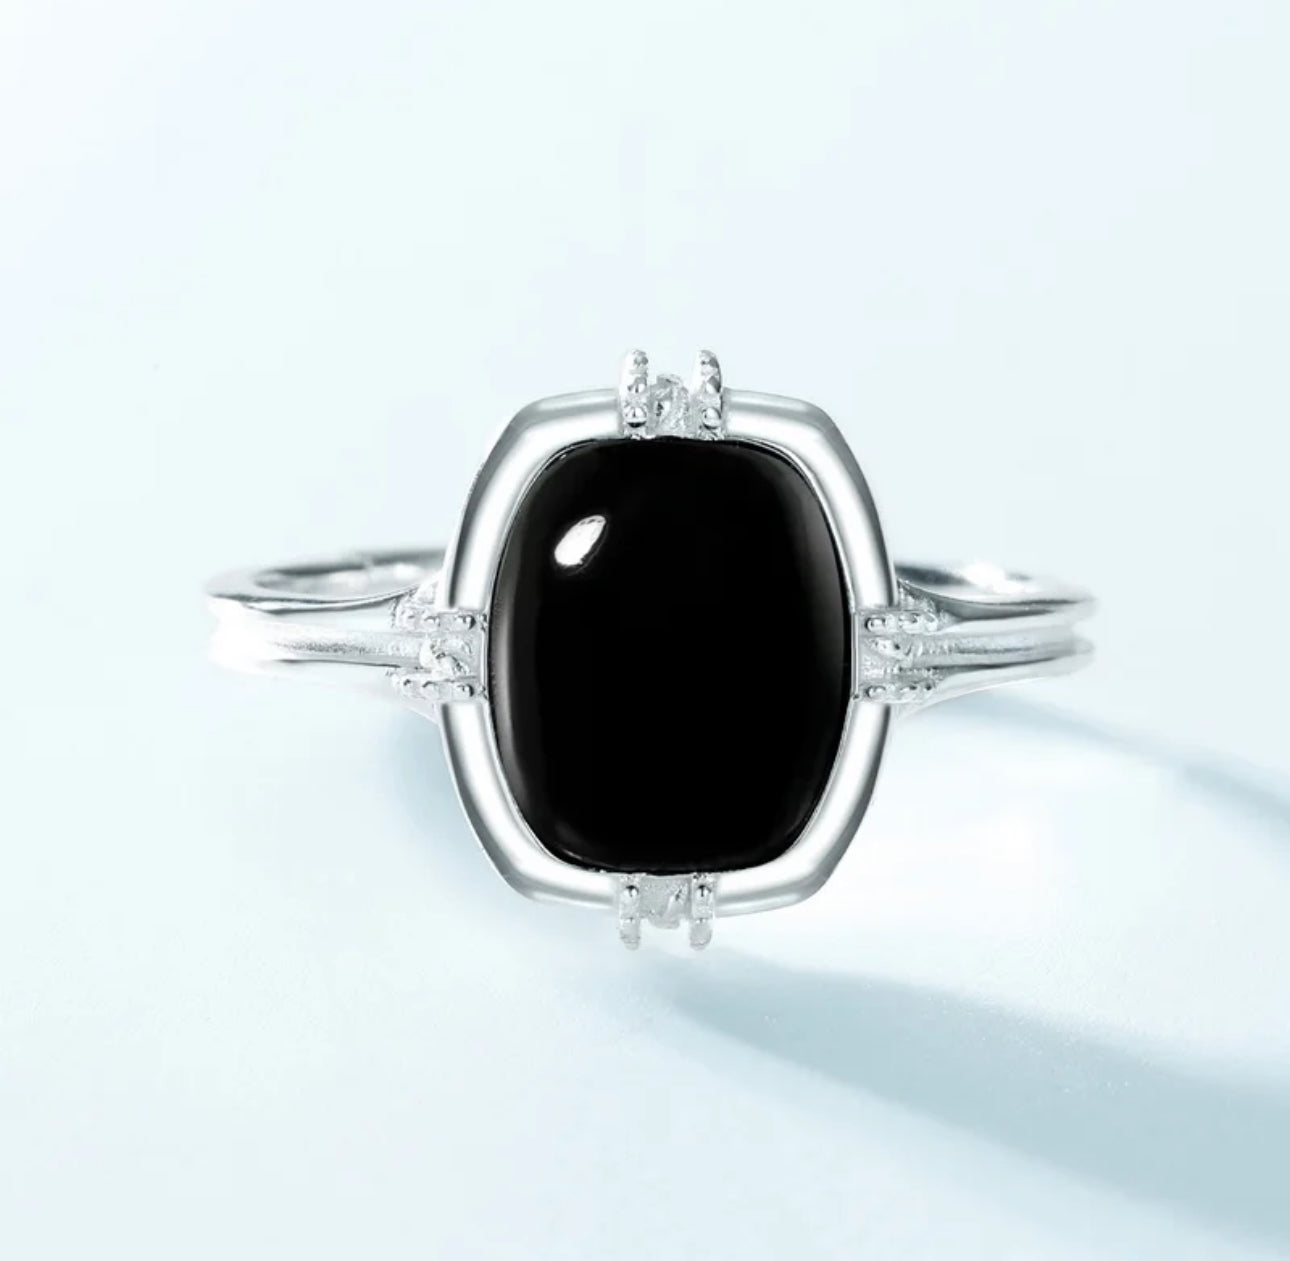 Black Cat Ring